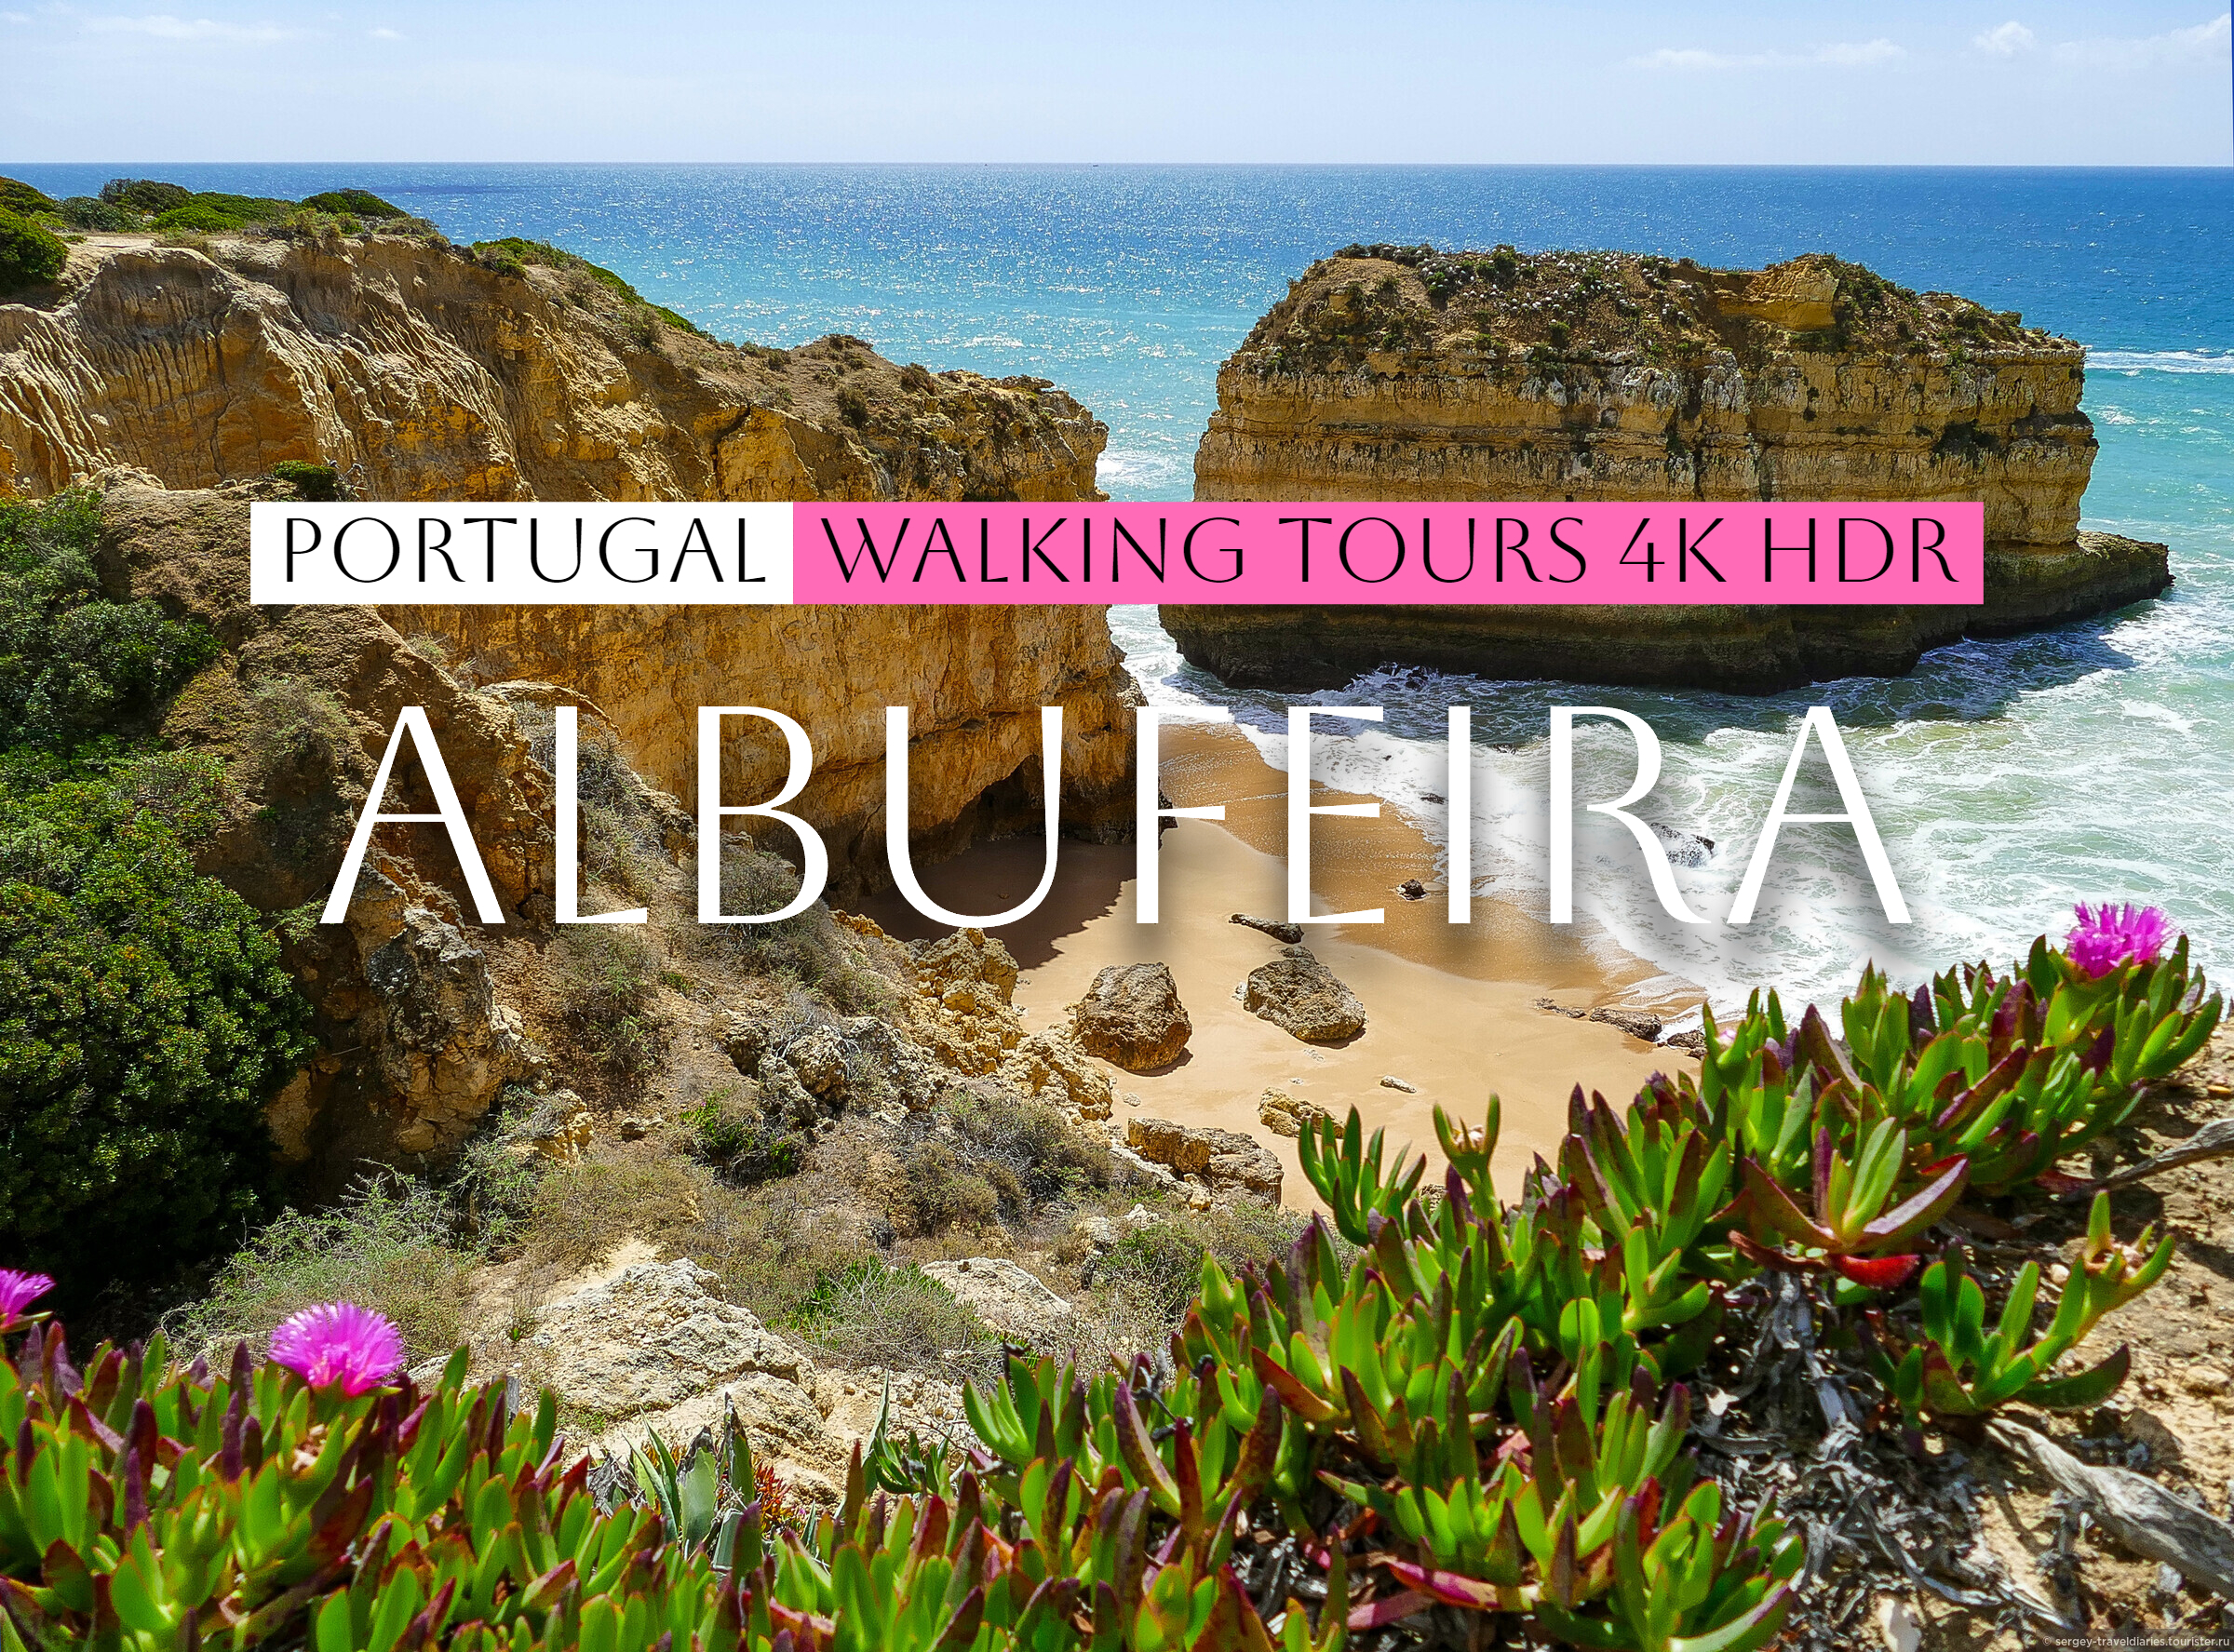 Албуфейра  курортный город в регионе Алгарве в Португалии Albufeira, Algarve, Portugal Walking Tour